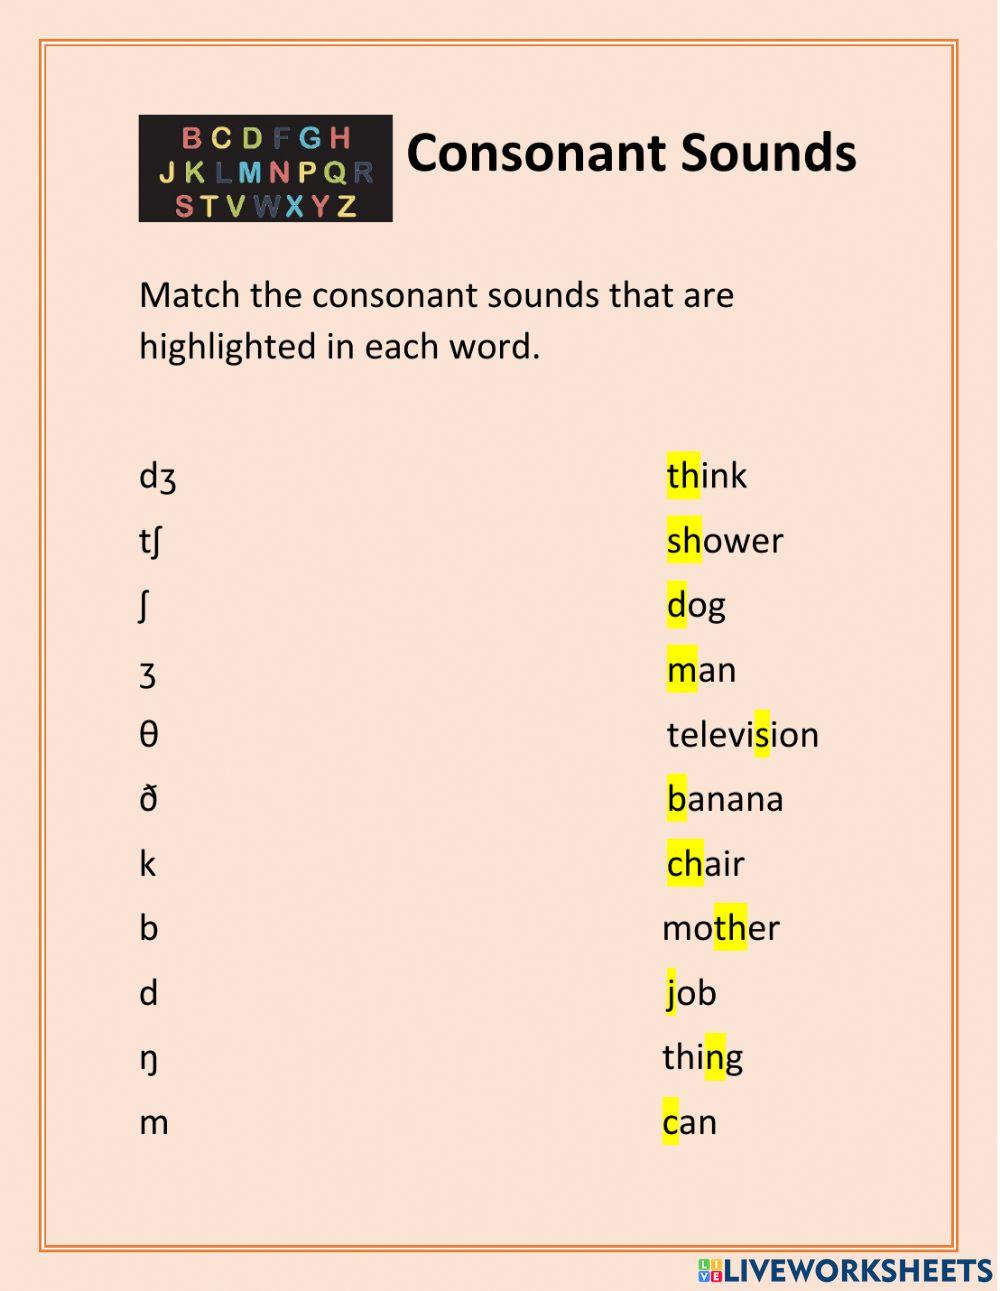 Consonant sounds